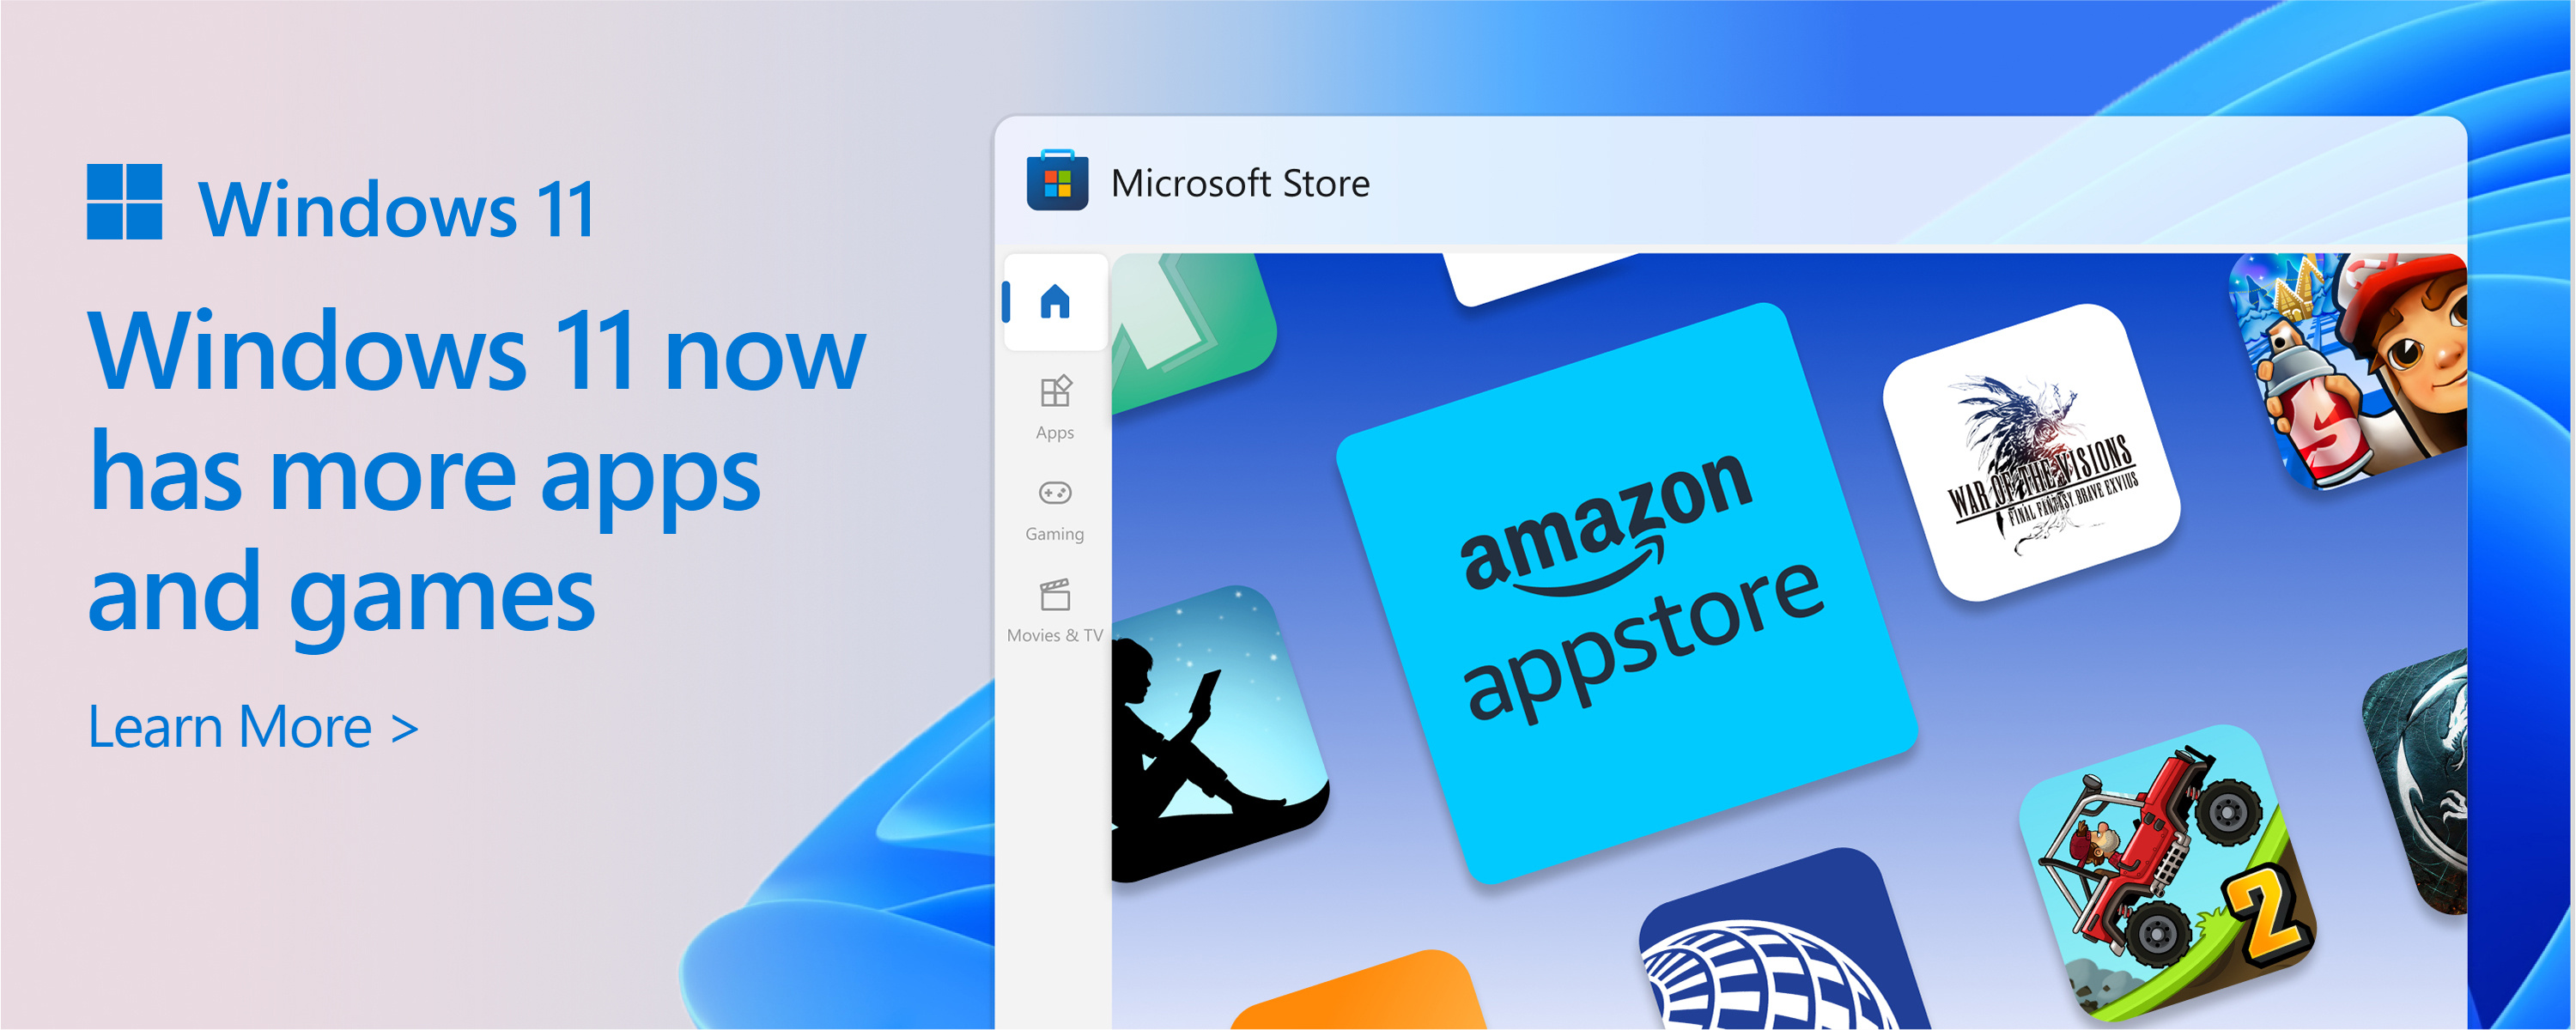 Een schermopname van de Microsoft Store met de tekst: De catalogus van de Microsoft Store groeit. Windows 11 geeft u meer van de apps en games die u wilt en nodig hebt.